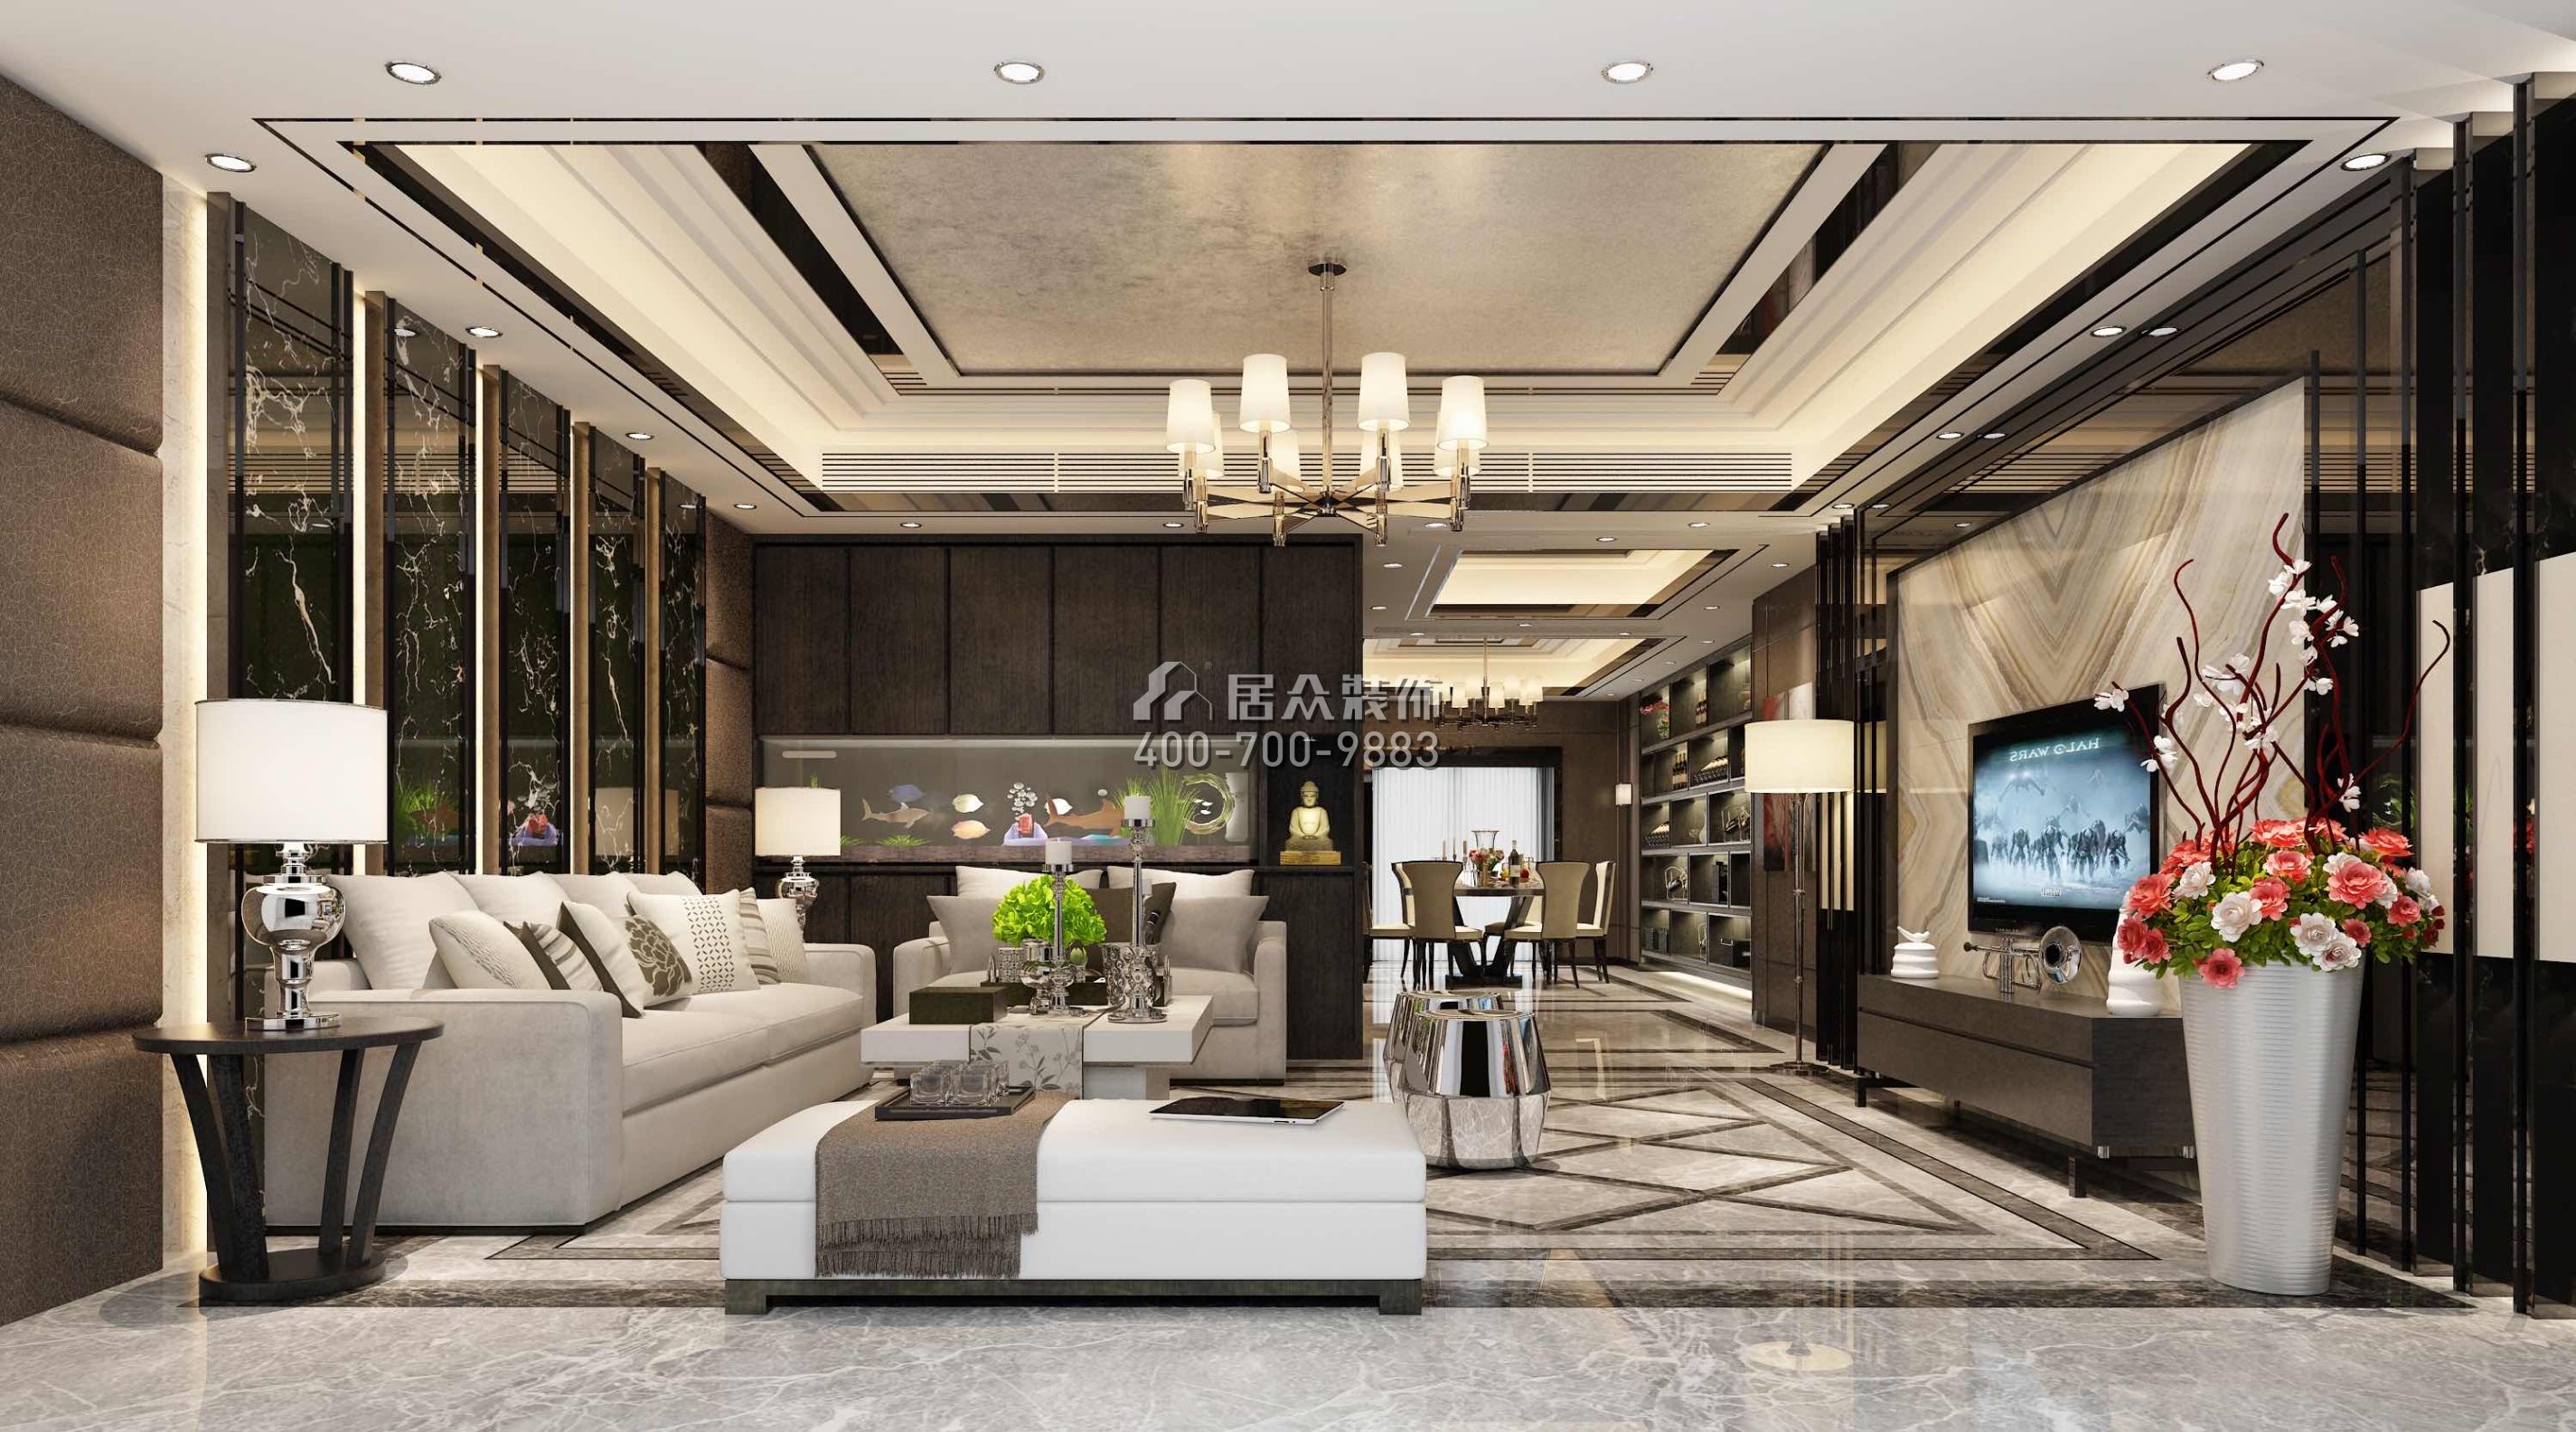 山语清晖218平方米新古典风格平层户型客厅装修效果图